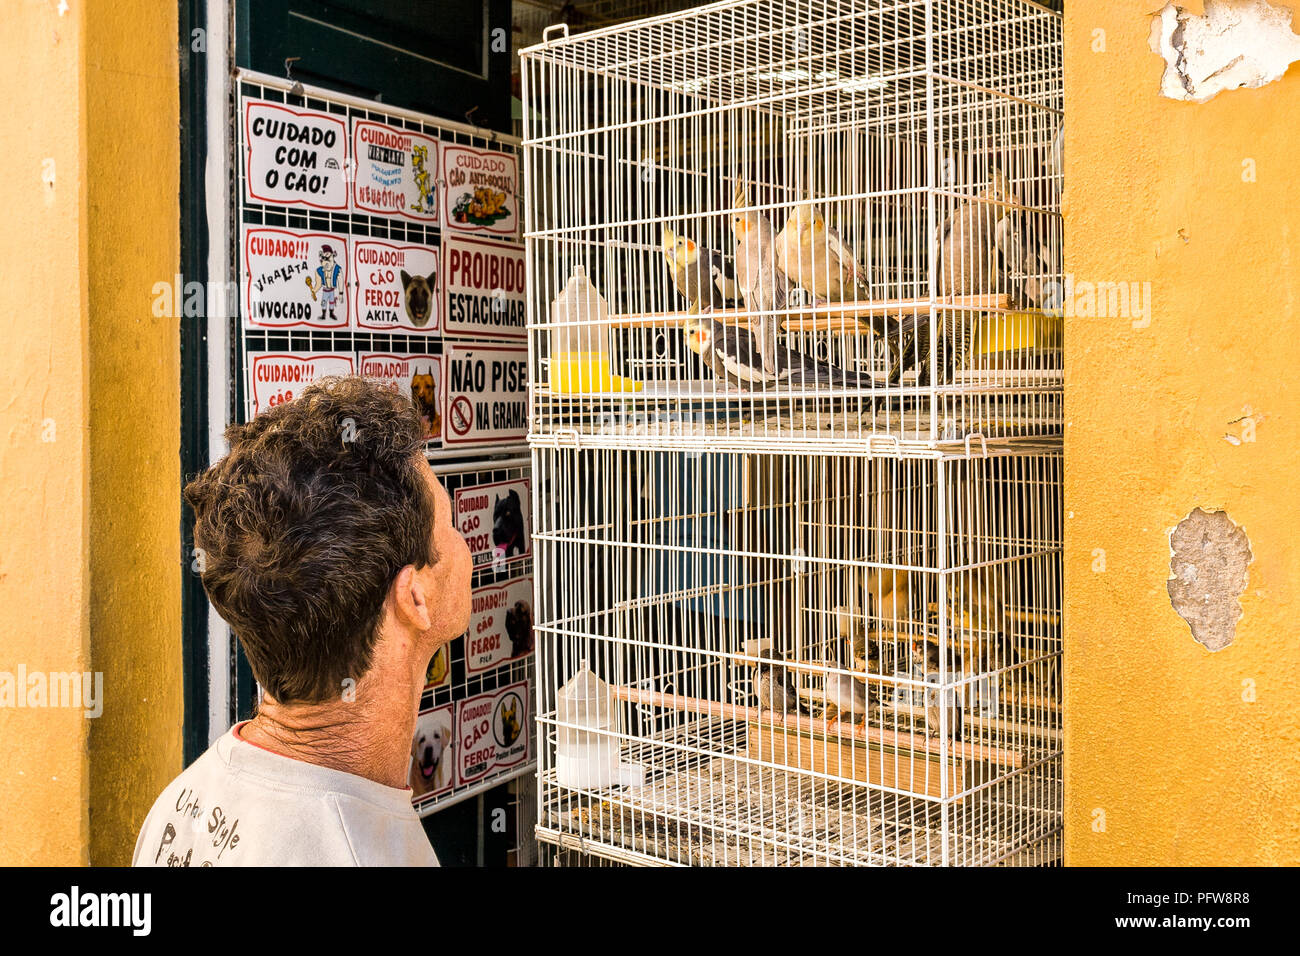 Der Mensch auf der Suche nach Vögeln in einem Käfig für den Verkauf in  einem Vogel Shop an kommunalen öffentlichen Markt. Florianópolis, Santa  Catarina, Brasilien Stockfotografie - Alamy